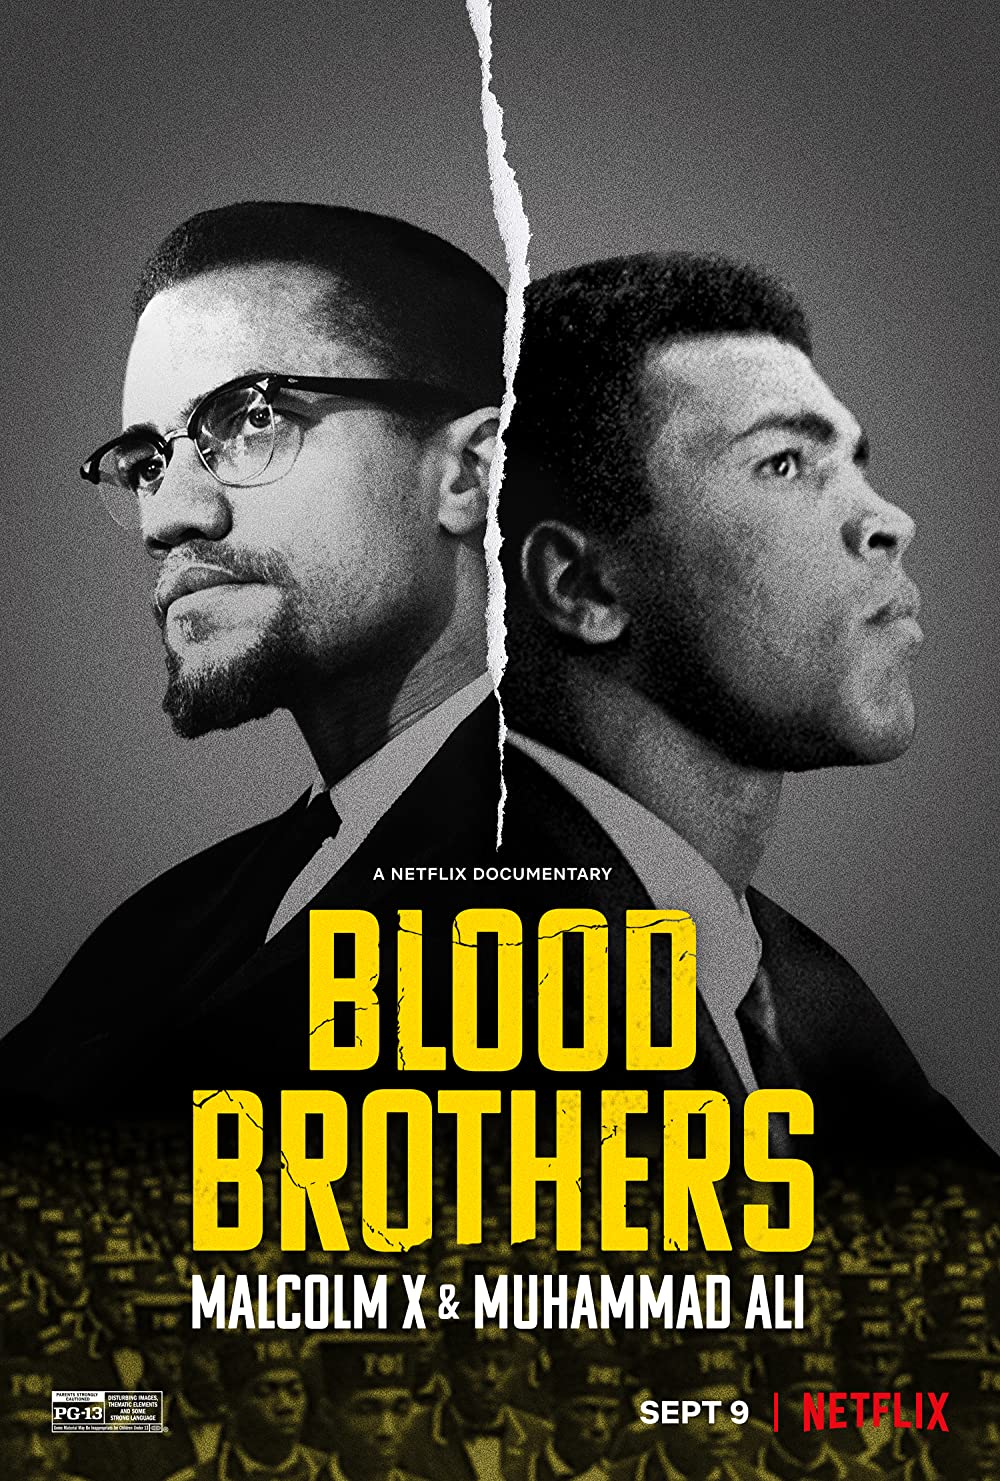 Vértestvérek: Malcolm X és Muhammad Ali online